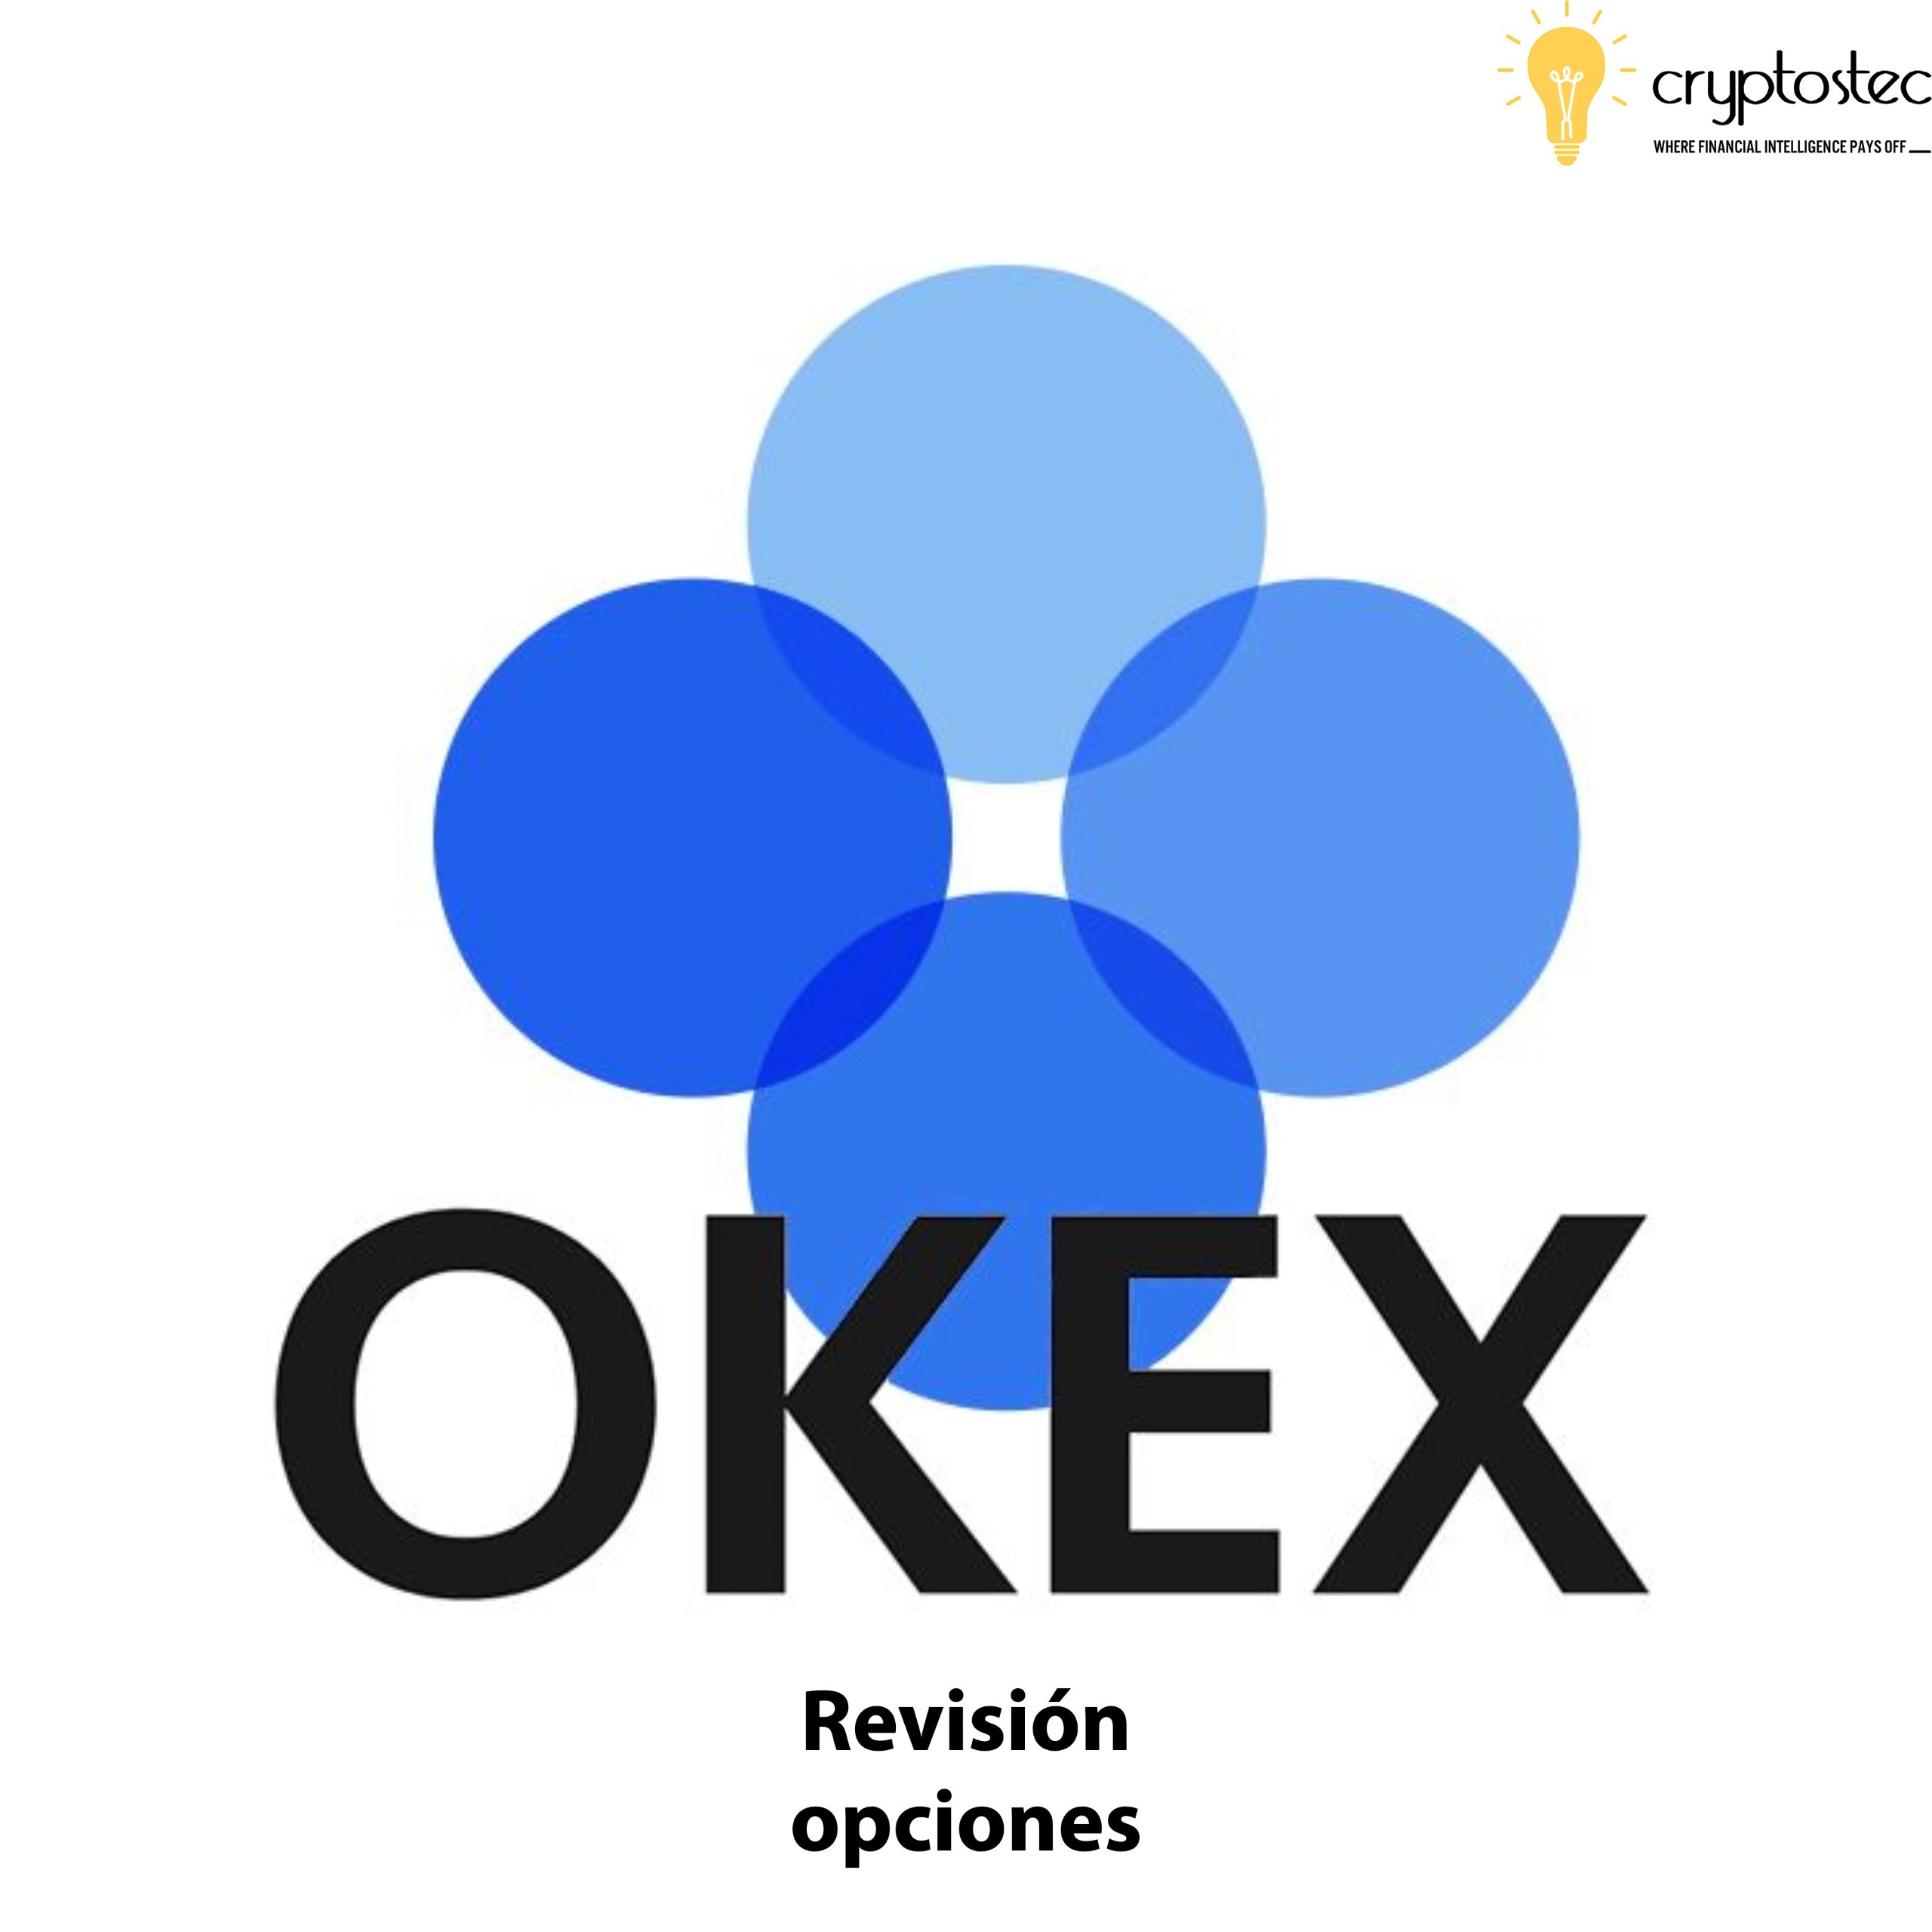 OKEX opiniones - edición de opciones de bitcoin - Cryptostec